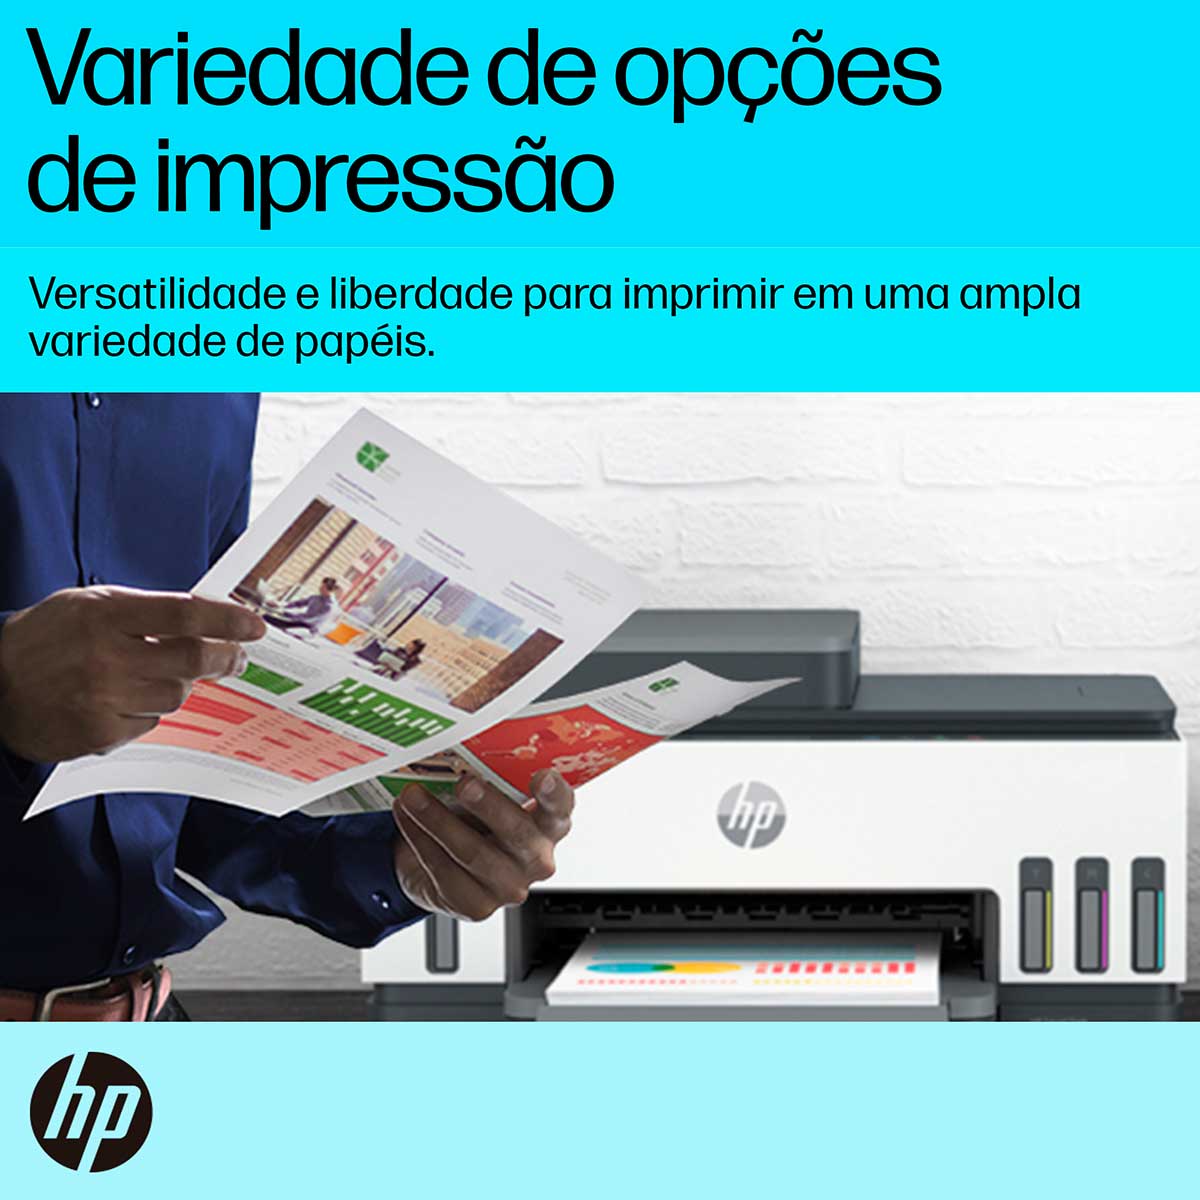 impressora-multifuncional-hp-smart-tank-754-tanque-de-tinta-colorida-scanner-duplex-wi-fi-usb-bluetooth-bivolt---2h0a6a-8.jpg